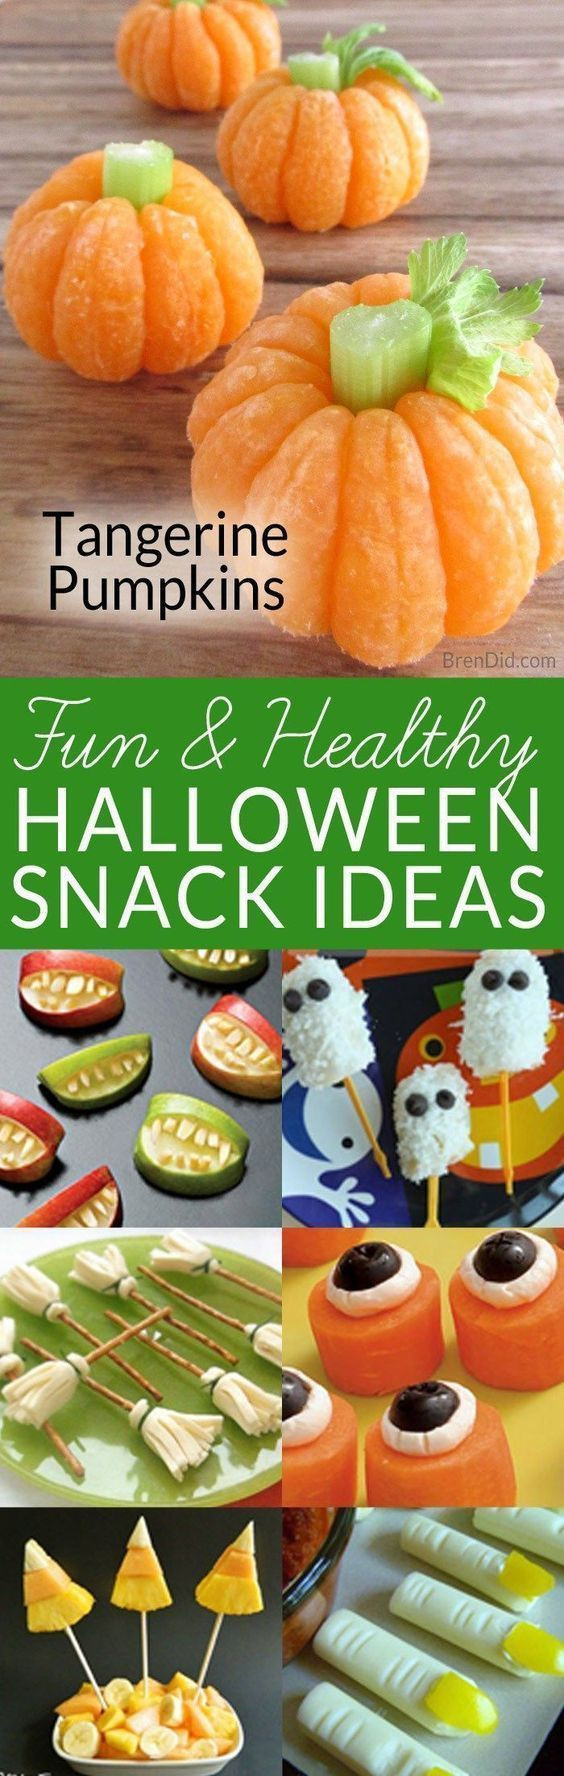 Healthy Halloween Snacks For Kids
 Best 25 Healthy halloween snacks ideas on Pinterest